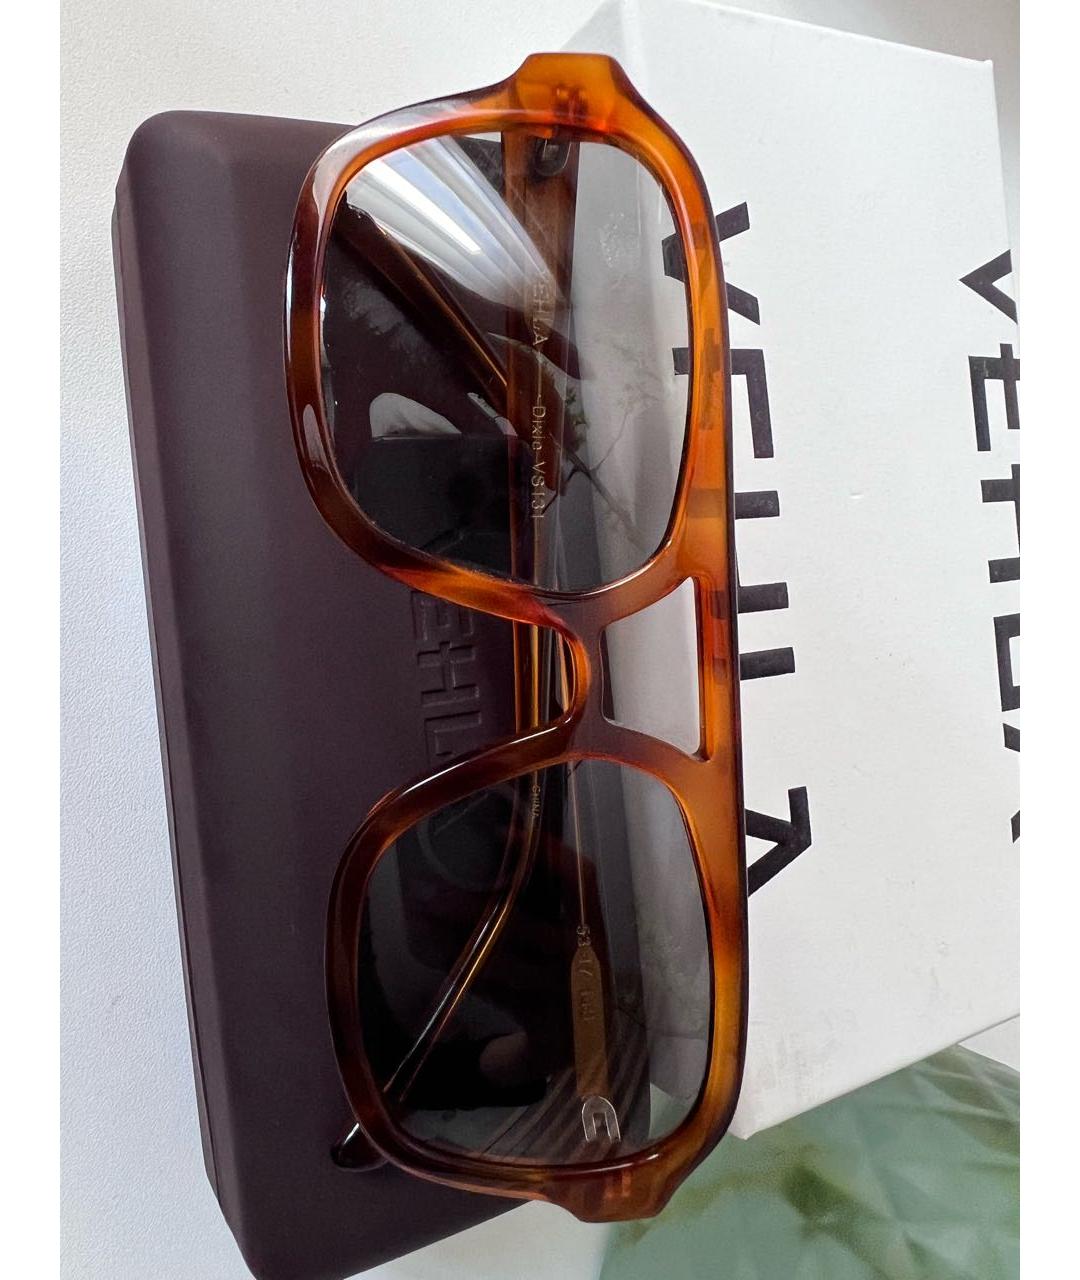 Vehla Коричневые пластиковые солнцезащитные очки, фото 5